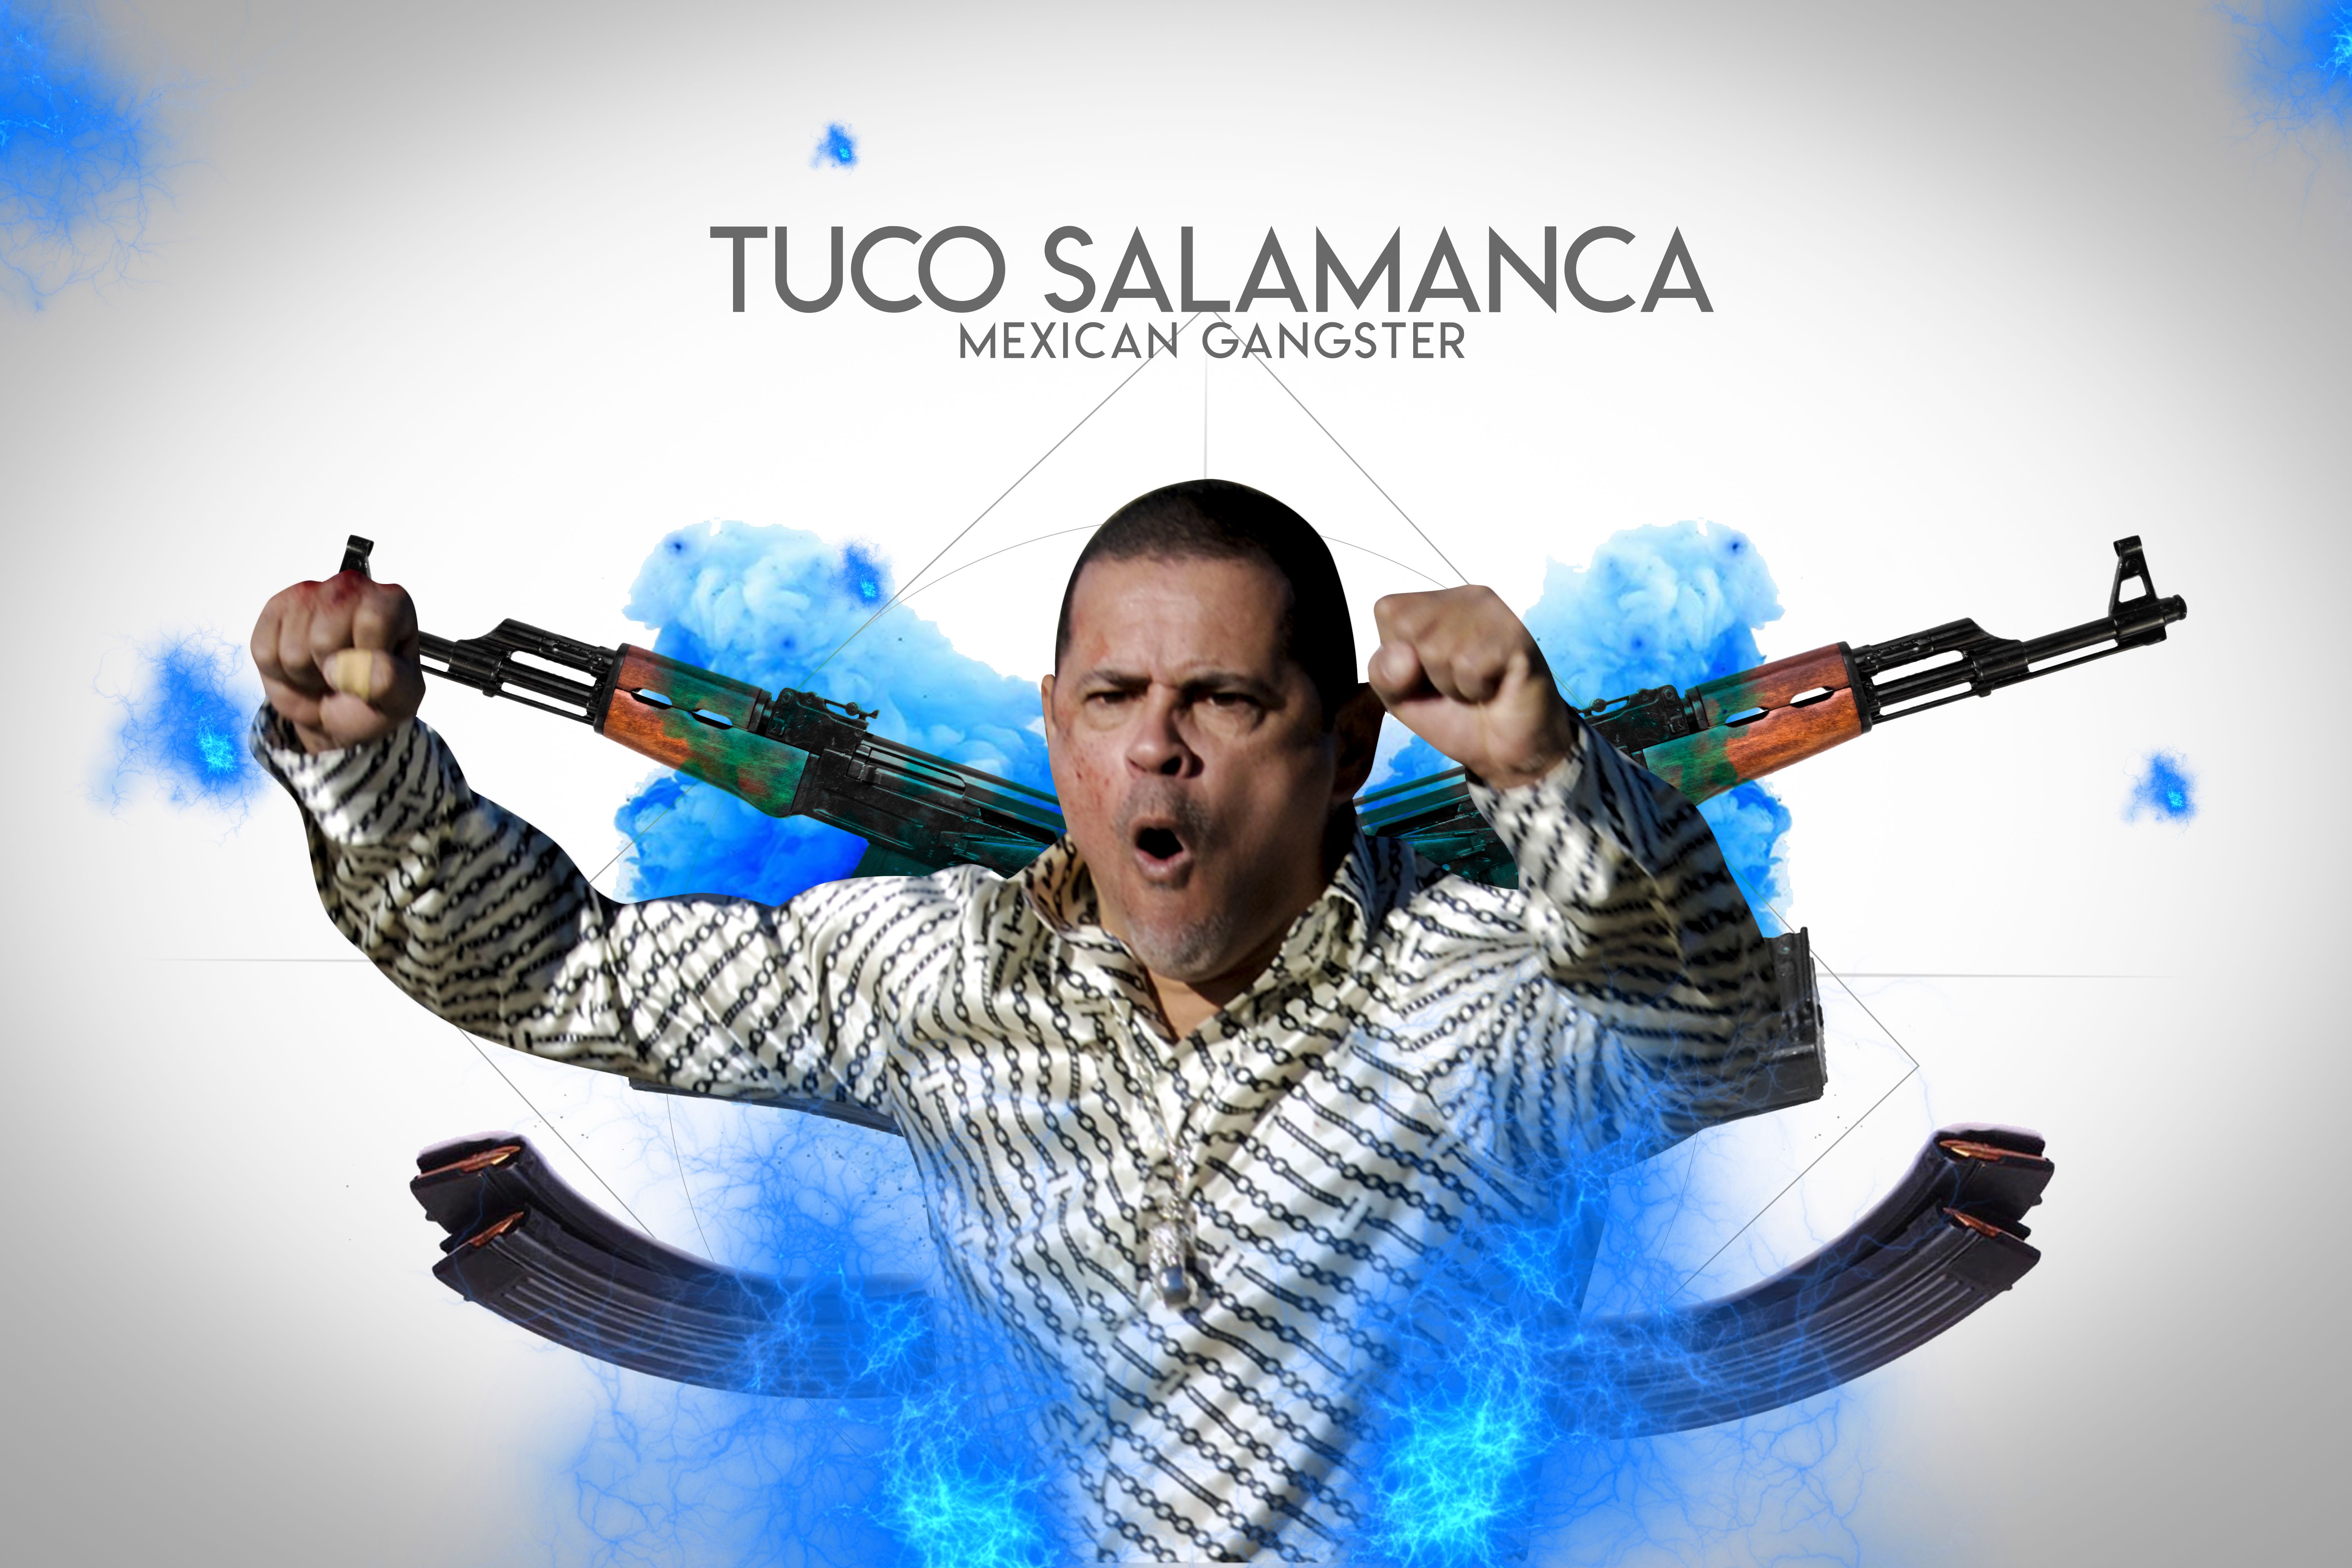 Tuco Salamanca. Breaking bad, Better call saul, Tuco salamanca